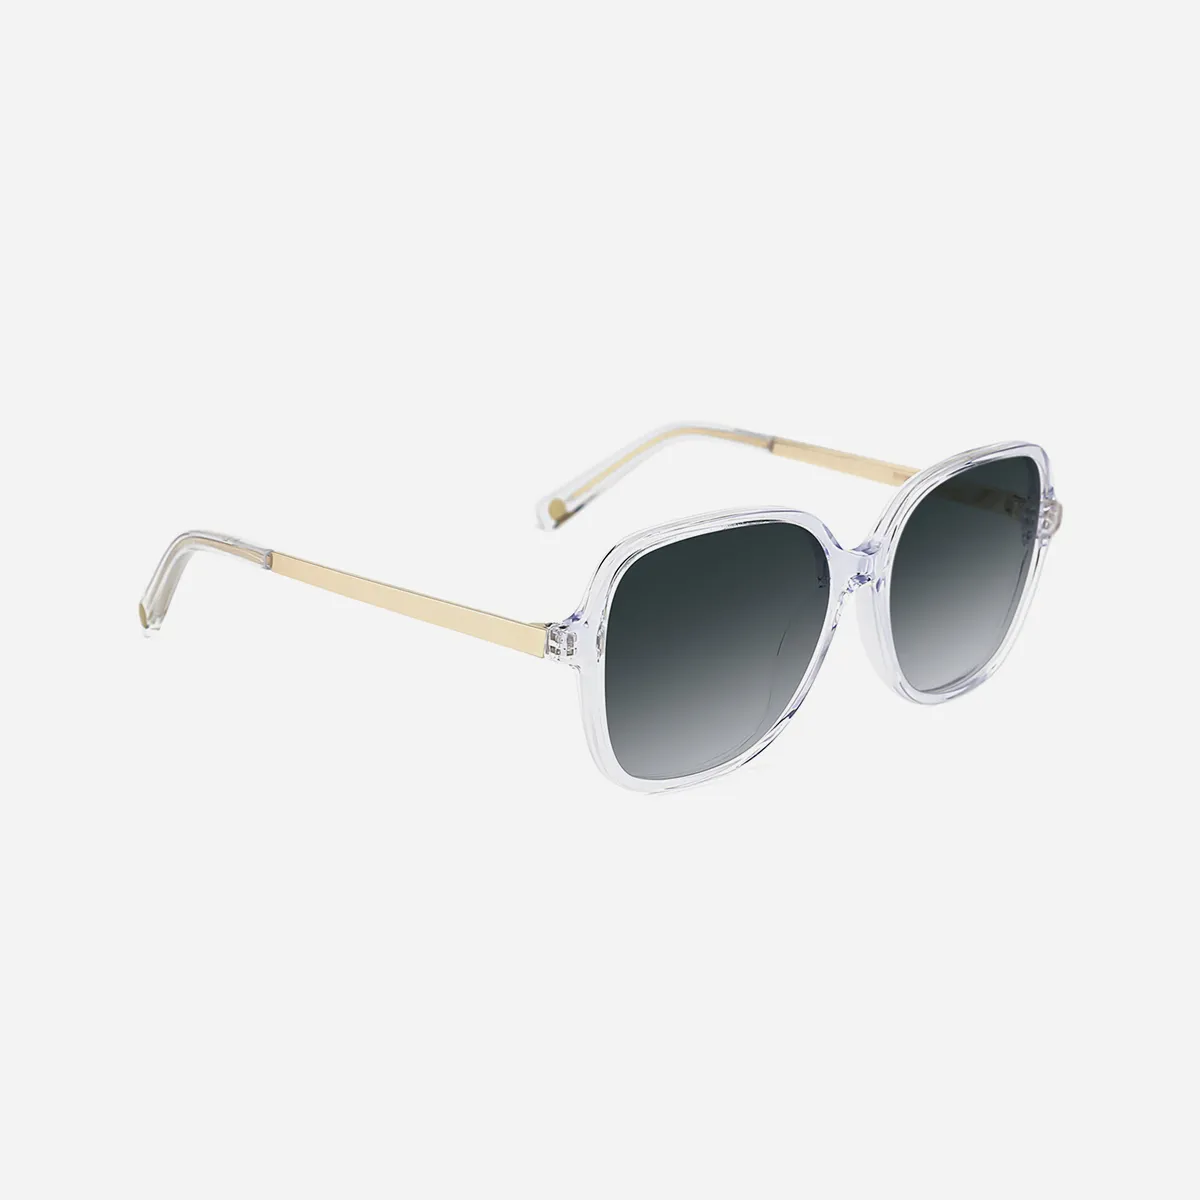 Noemi sunglasses in Transparent